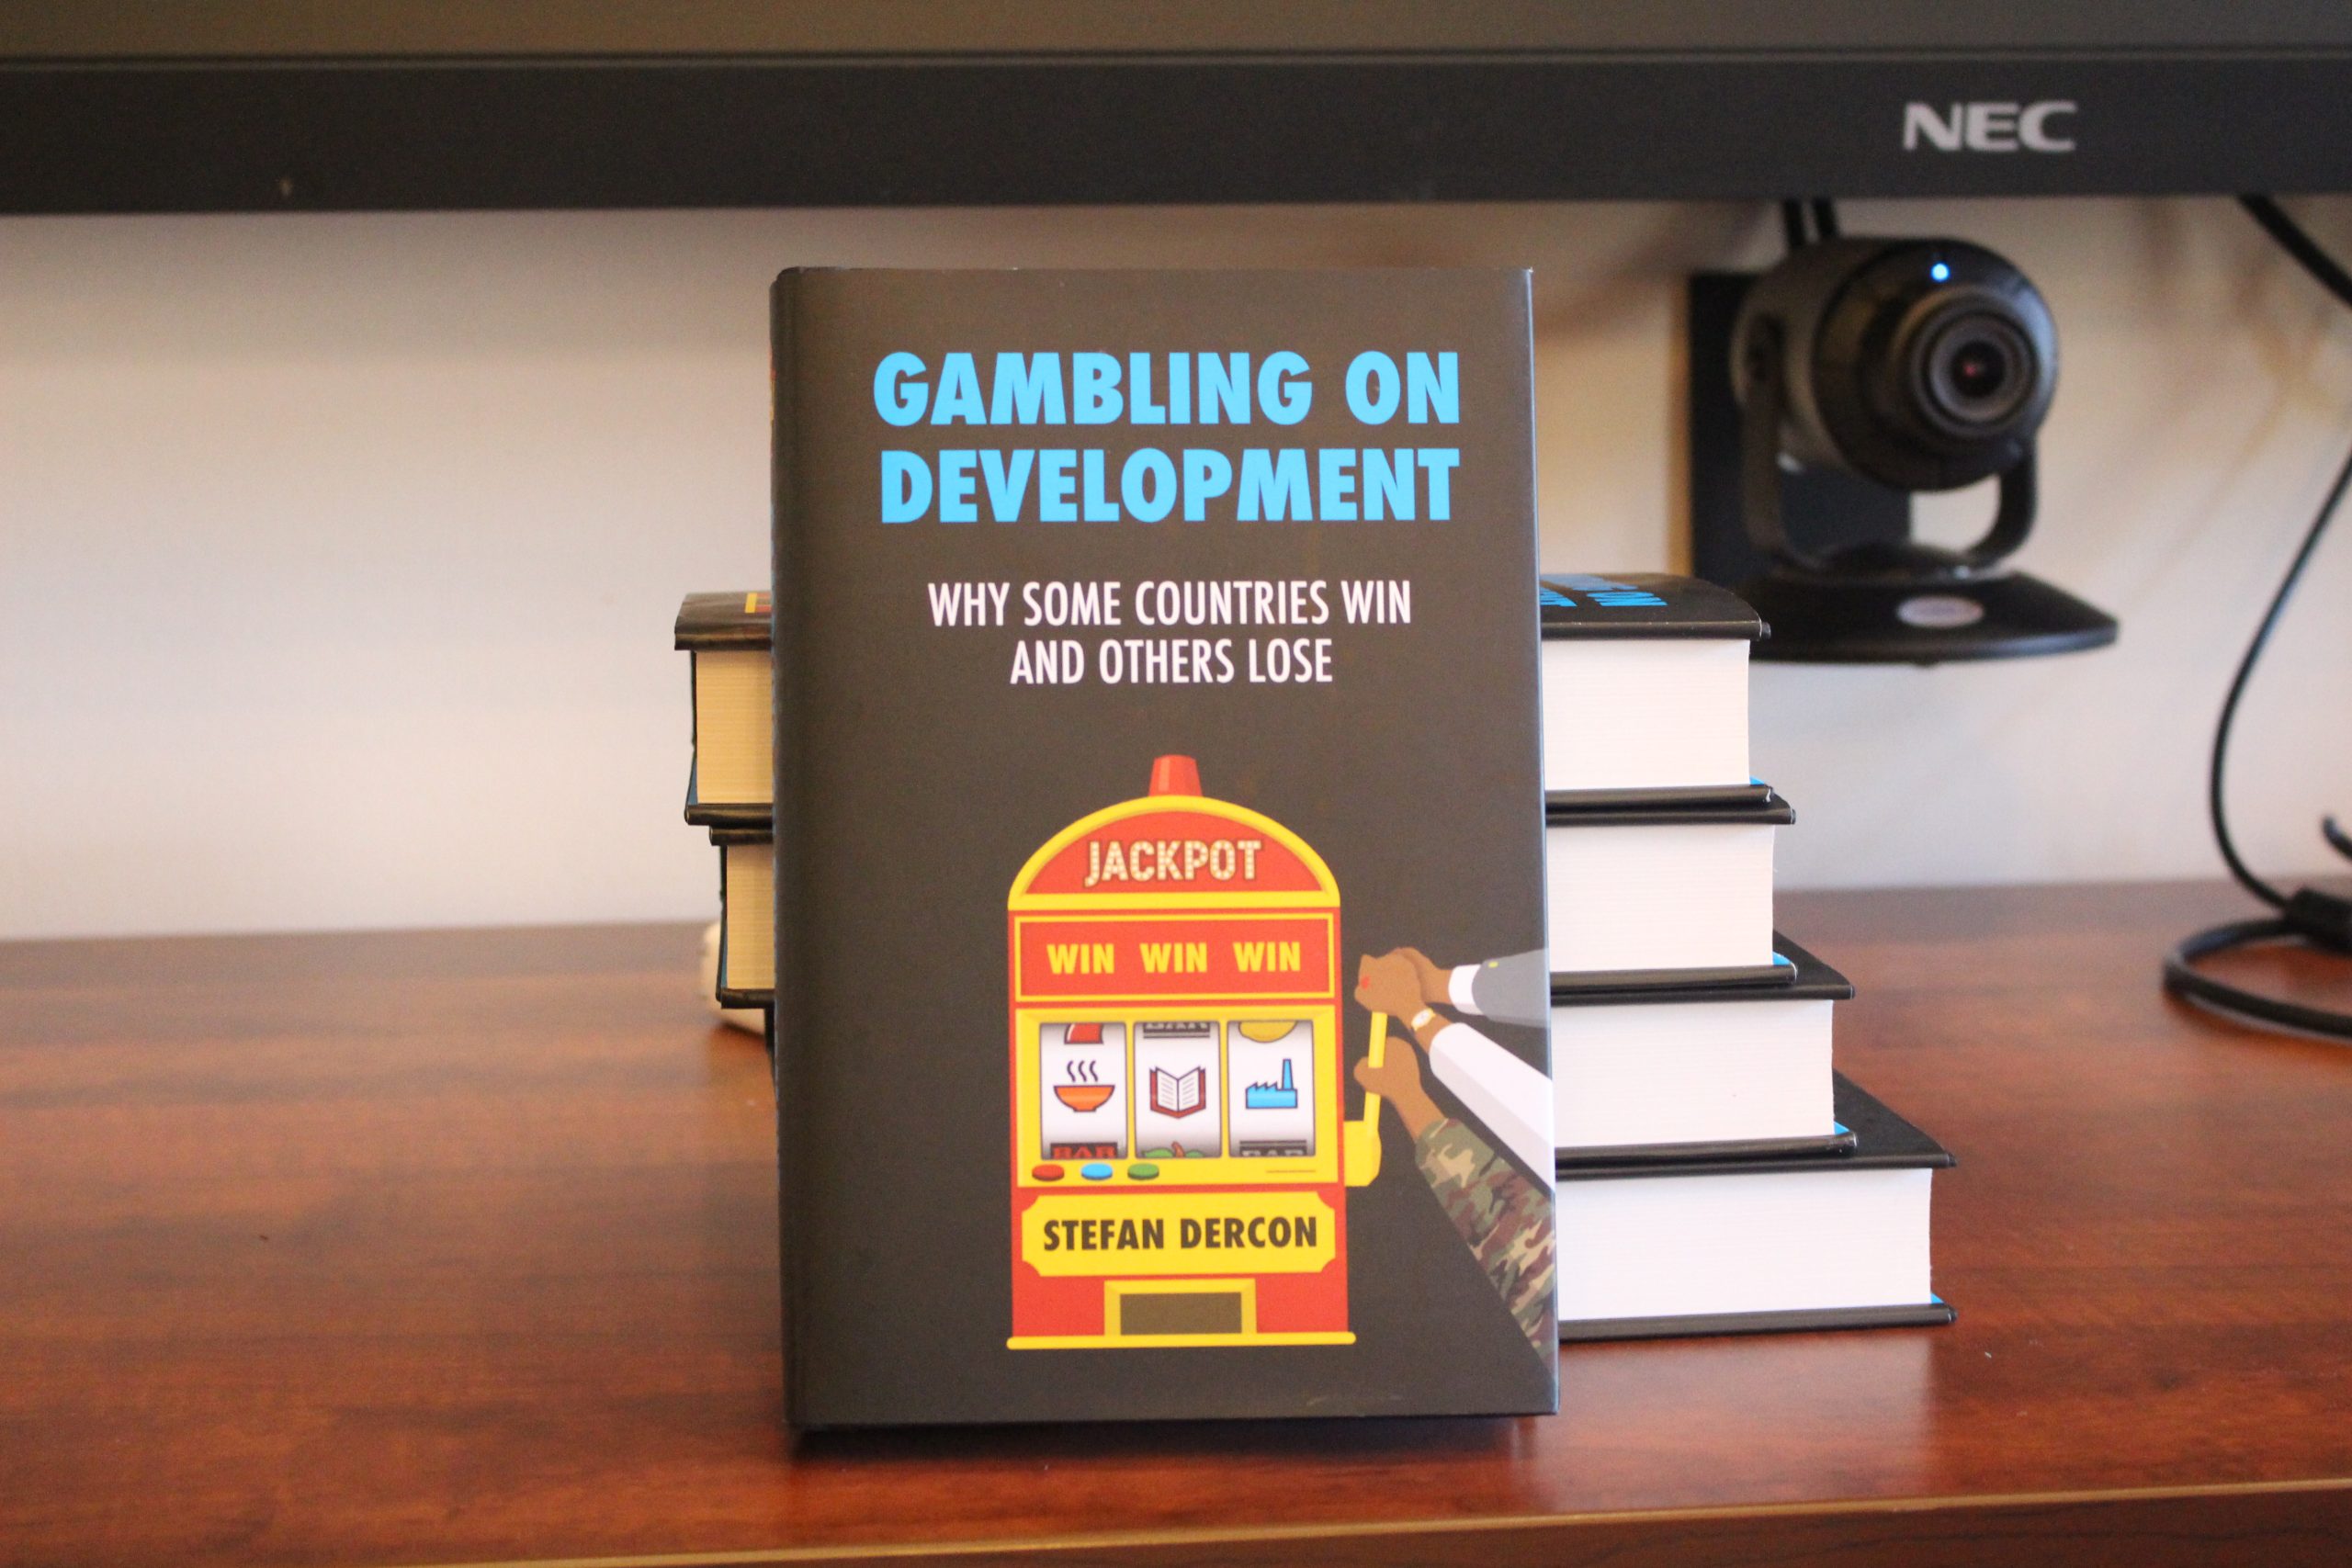 Stefan Dercon's book "Gambling on Development"